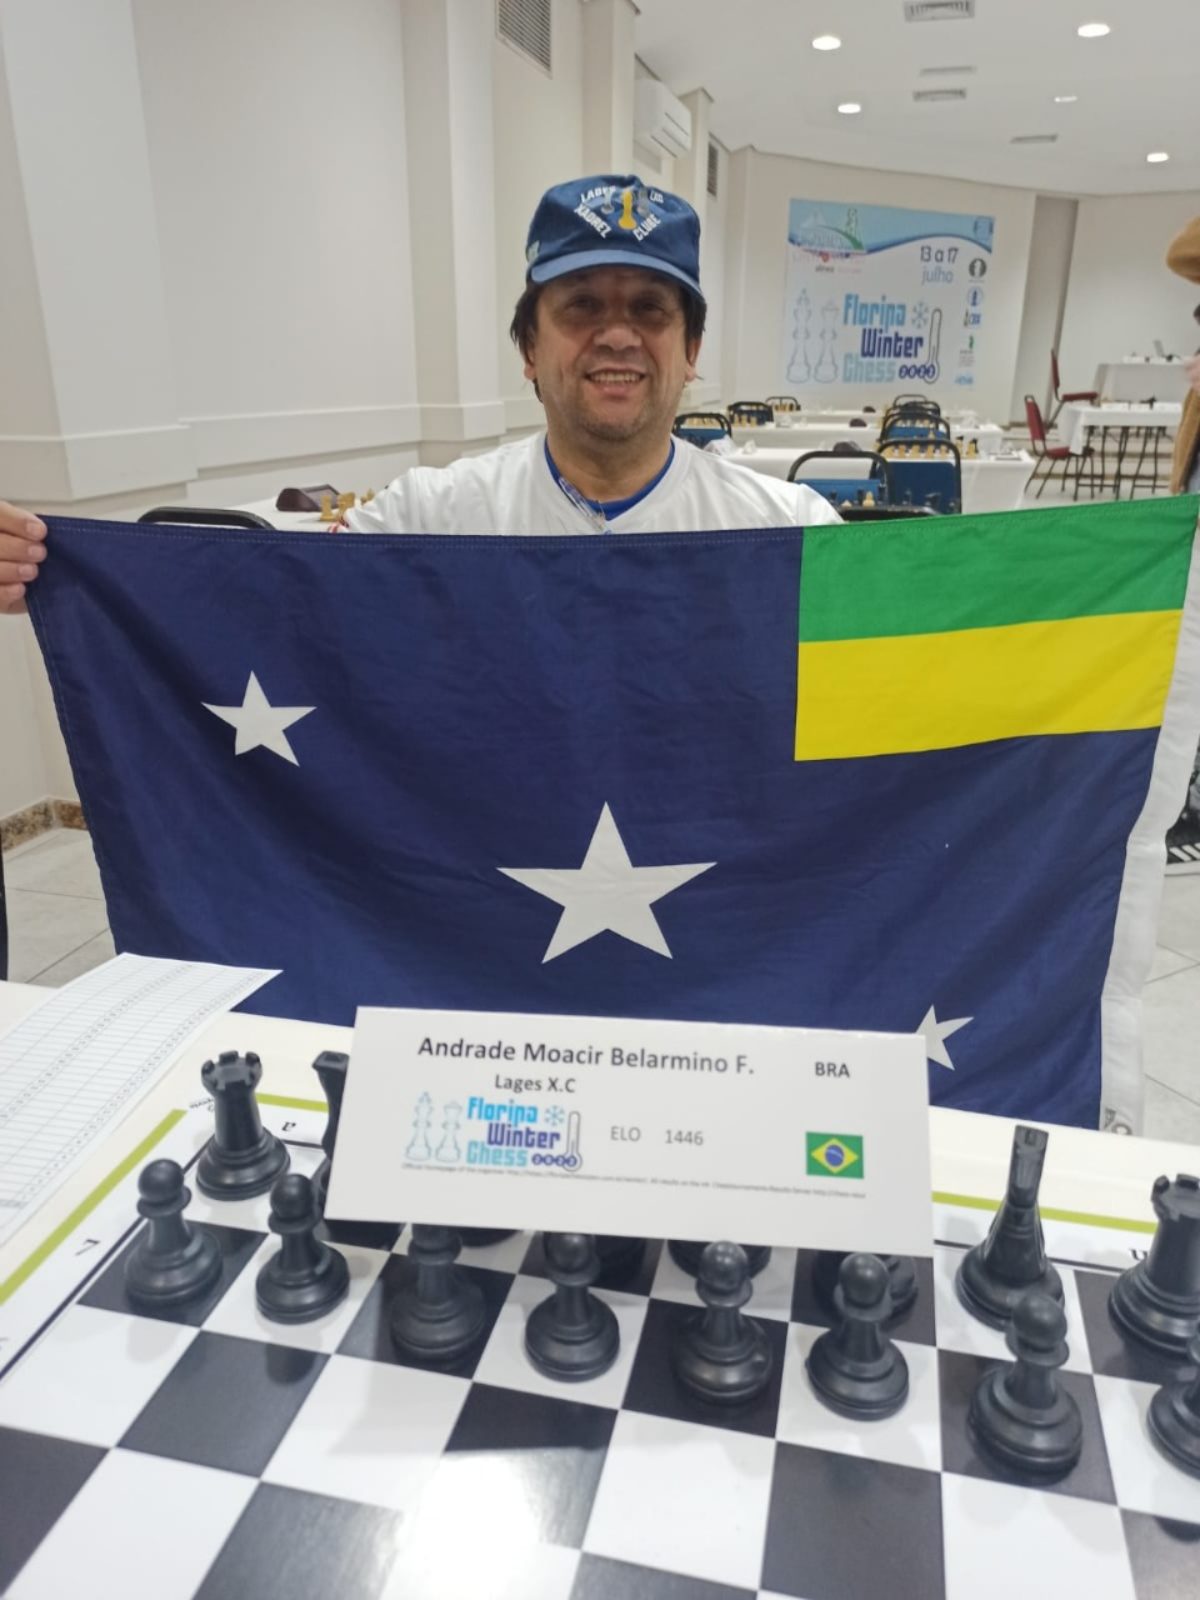 Grandes mestres de xadrez tri-campeões brasileiros participarão do Festival  Internacional de Xadrez Bahia Chess Open em SAJ - Blog do Valente